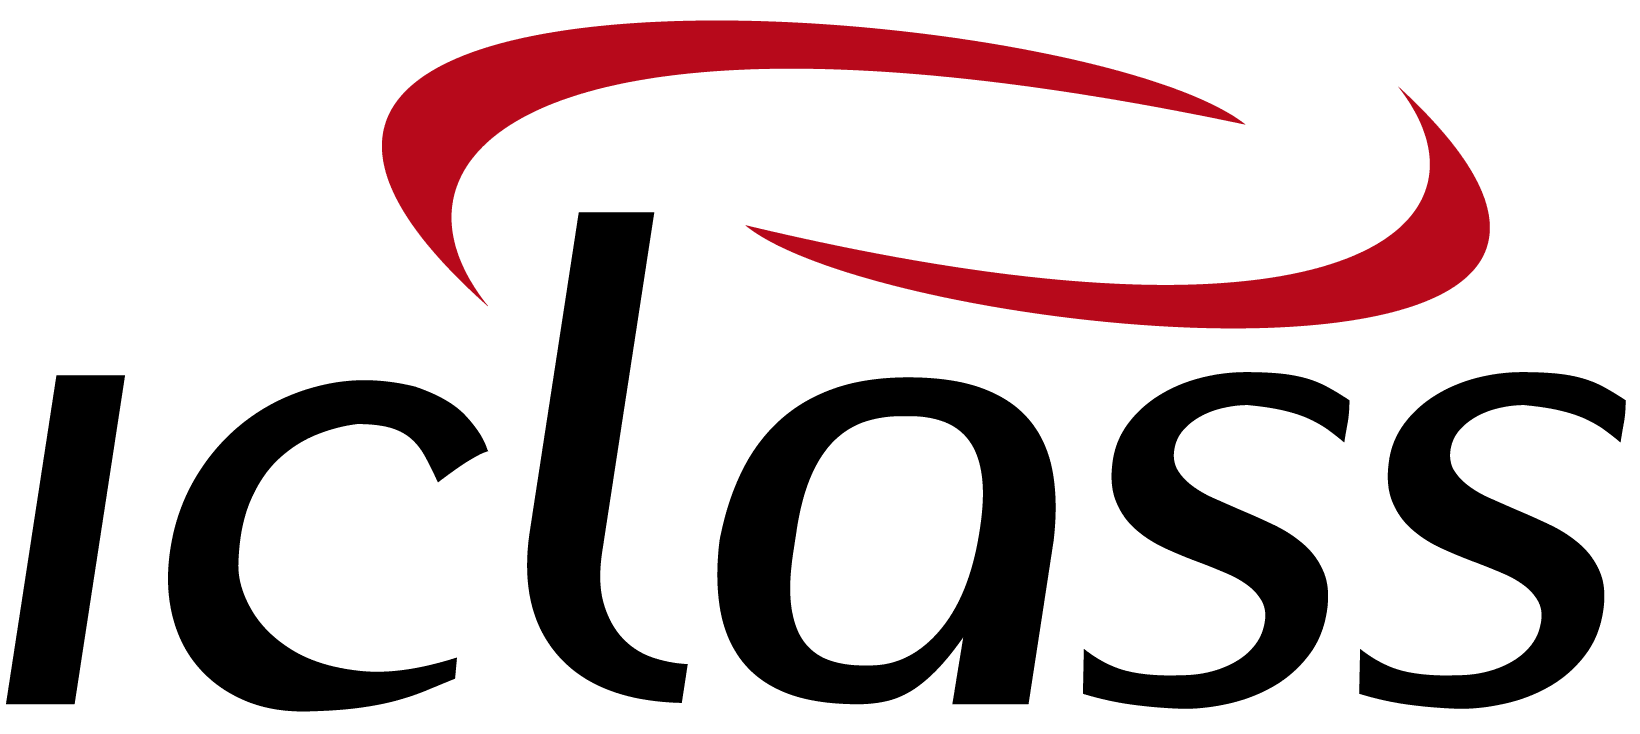 logo IClass Software de Ordem de Serviço Online Construcción y Contratistas | IClass